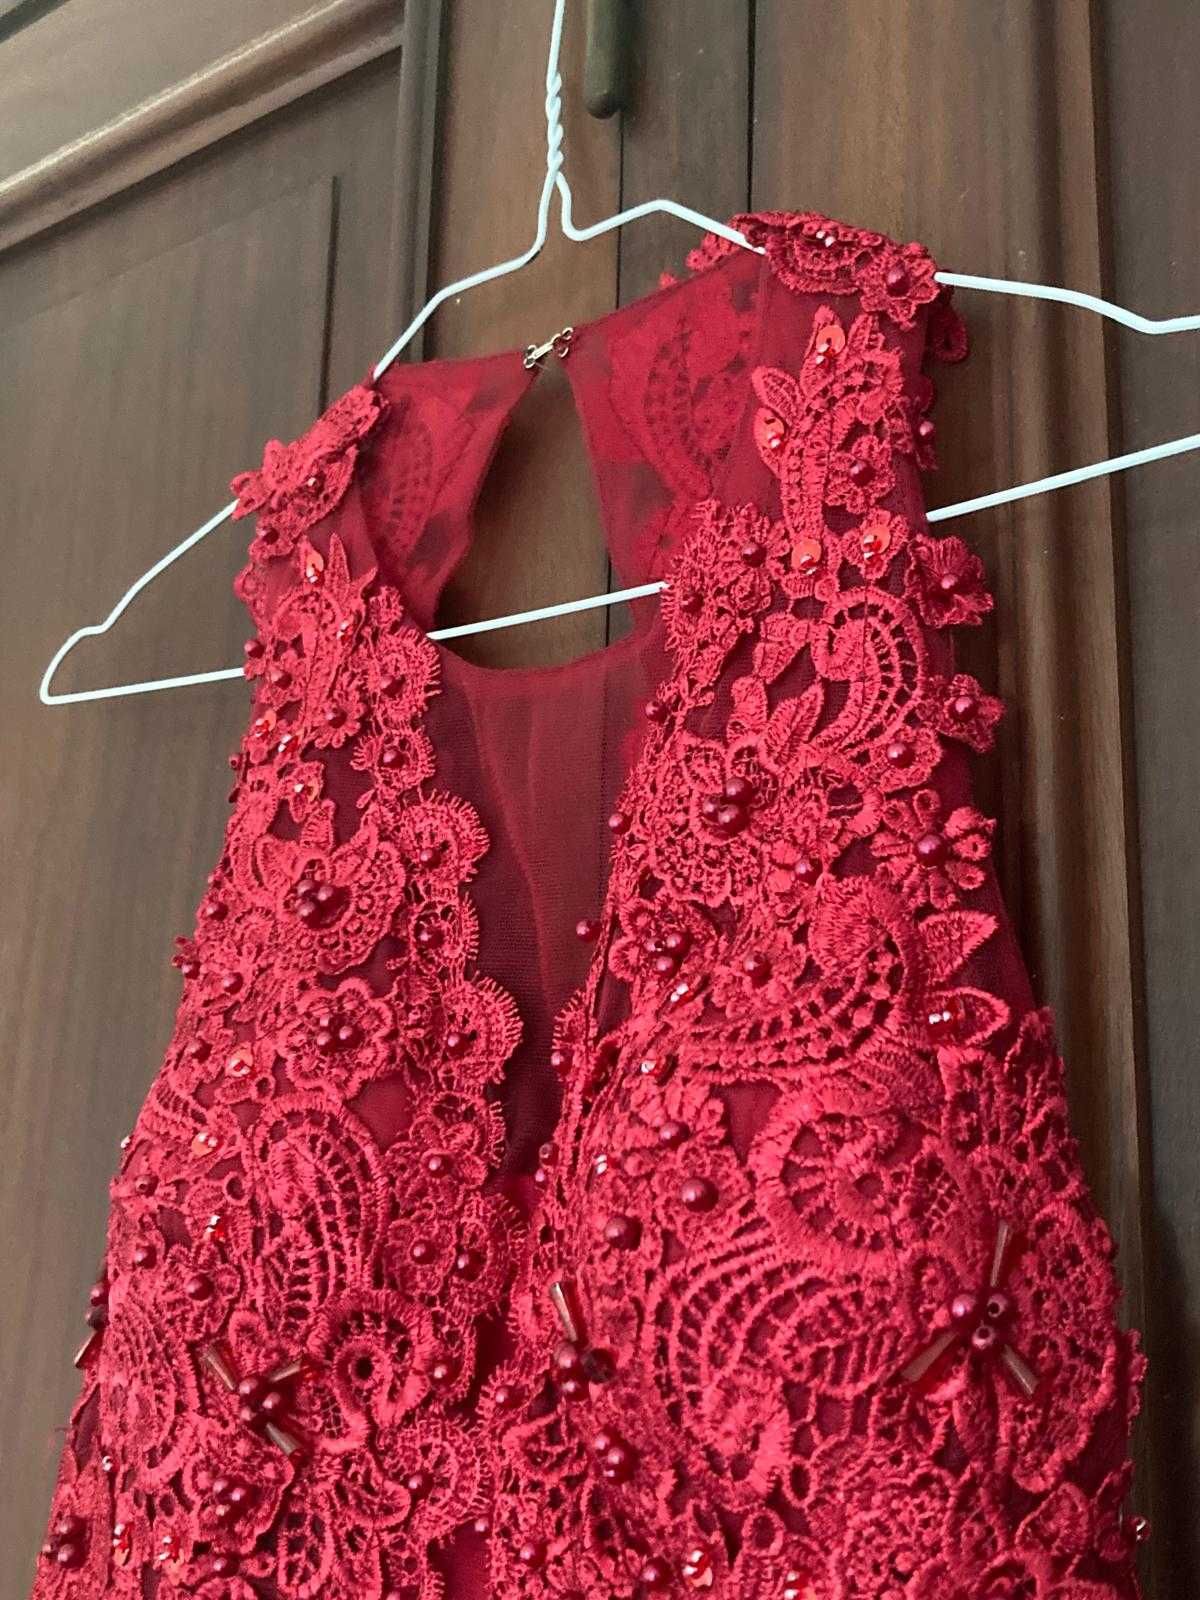 Vestido de Gala Vermelho Comprido sem costas M